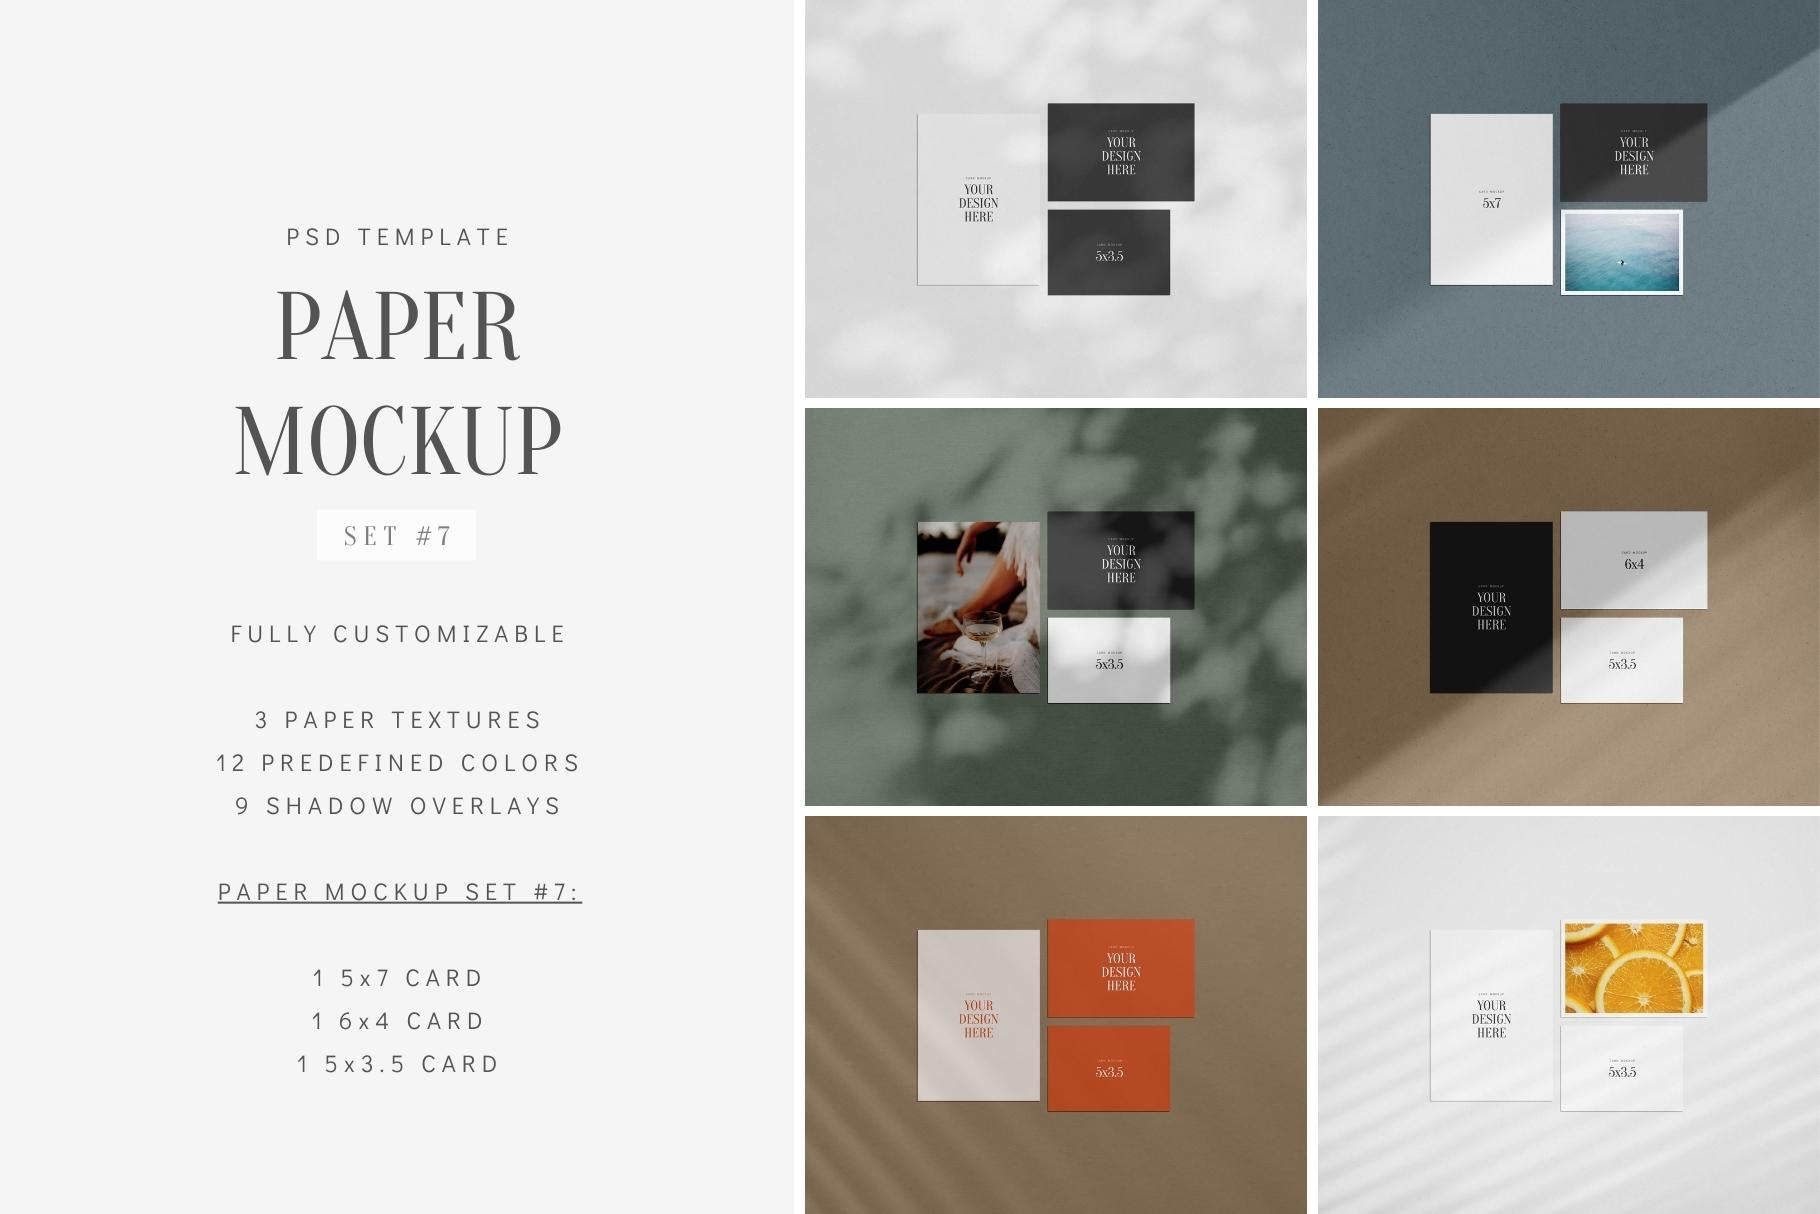 PAPER MOCKUP SET #7 | Card Mockup: 5x7, 6x4, 5x3.5 | PSD Mockup